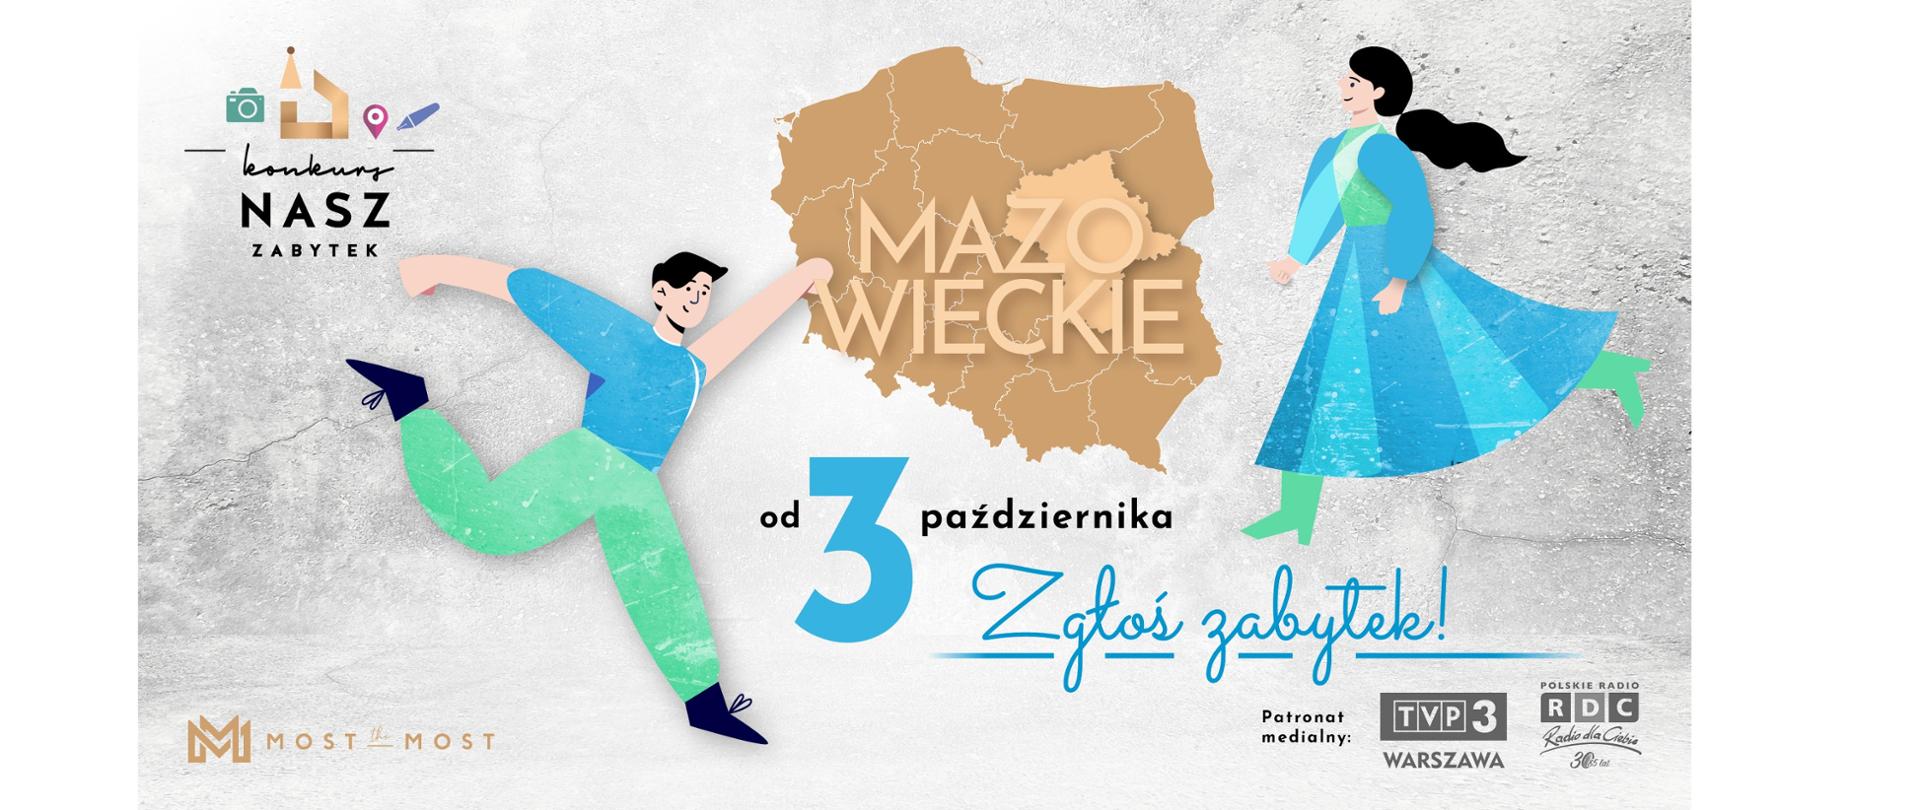 Obrazki tańczącego mężczyzny i kobiety. Mapa Polski z podziałem na województwa z napisem Mazowieckie. Do 3 Października zgłoś zabytek